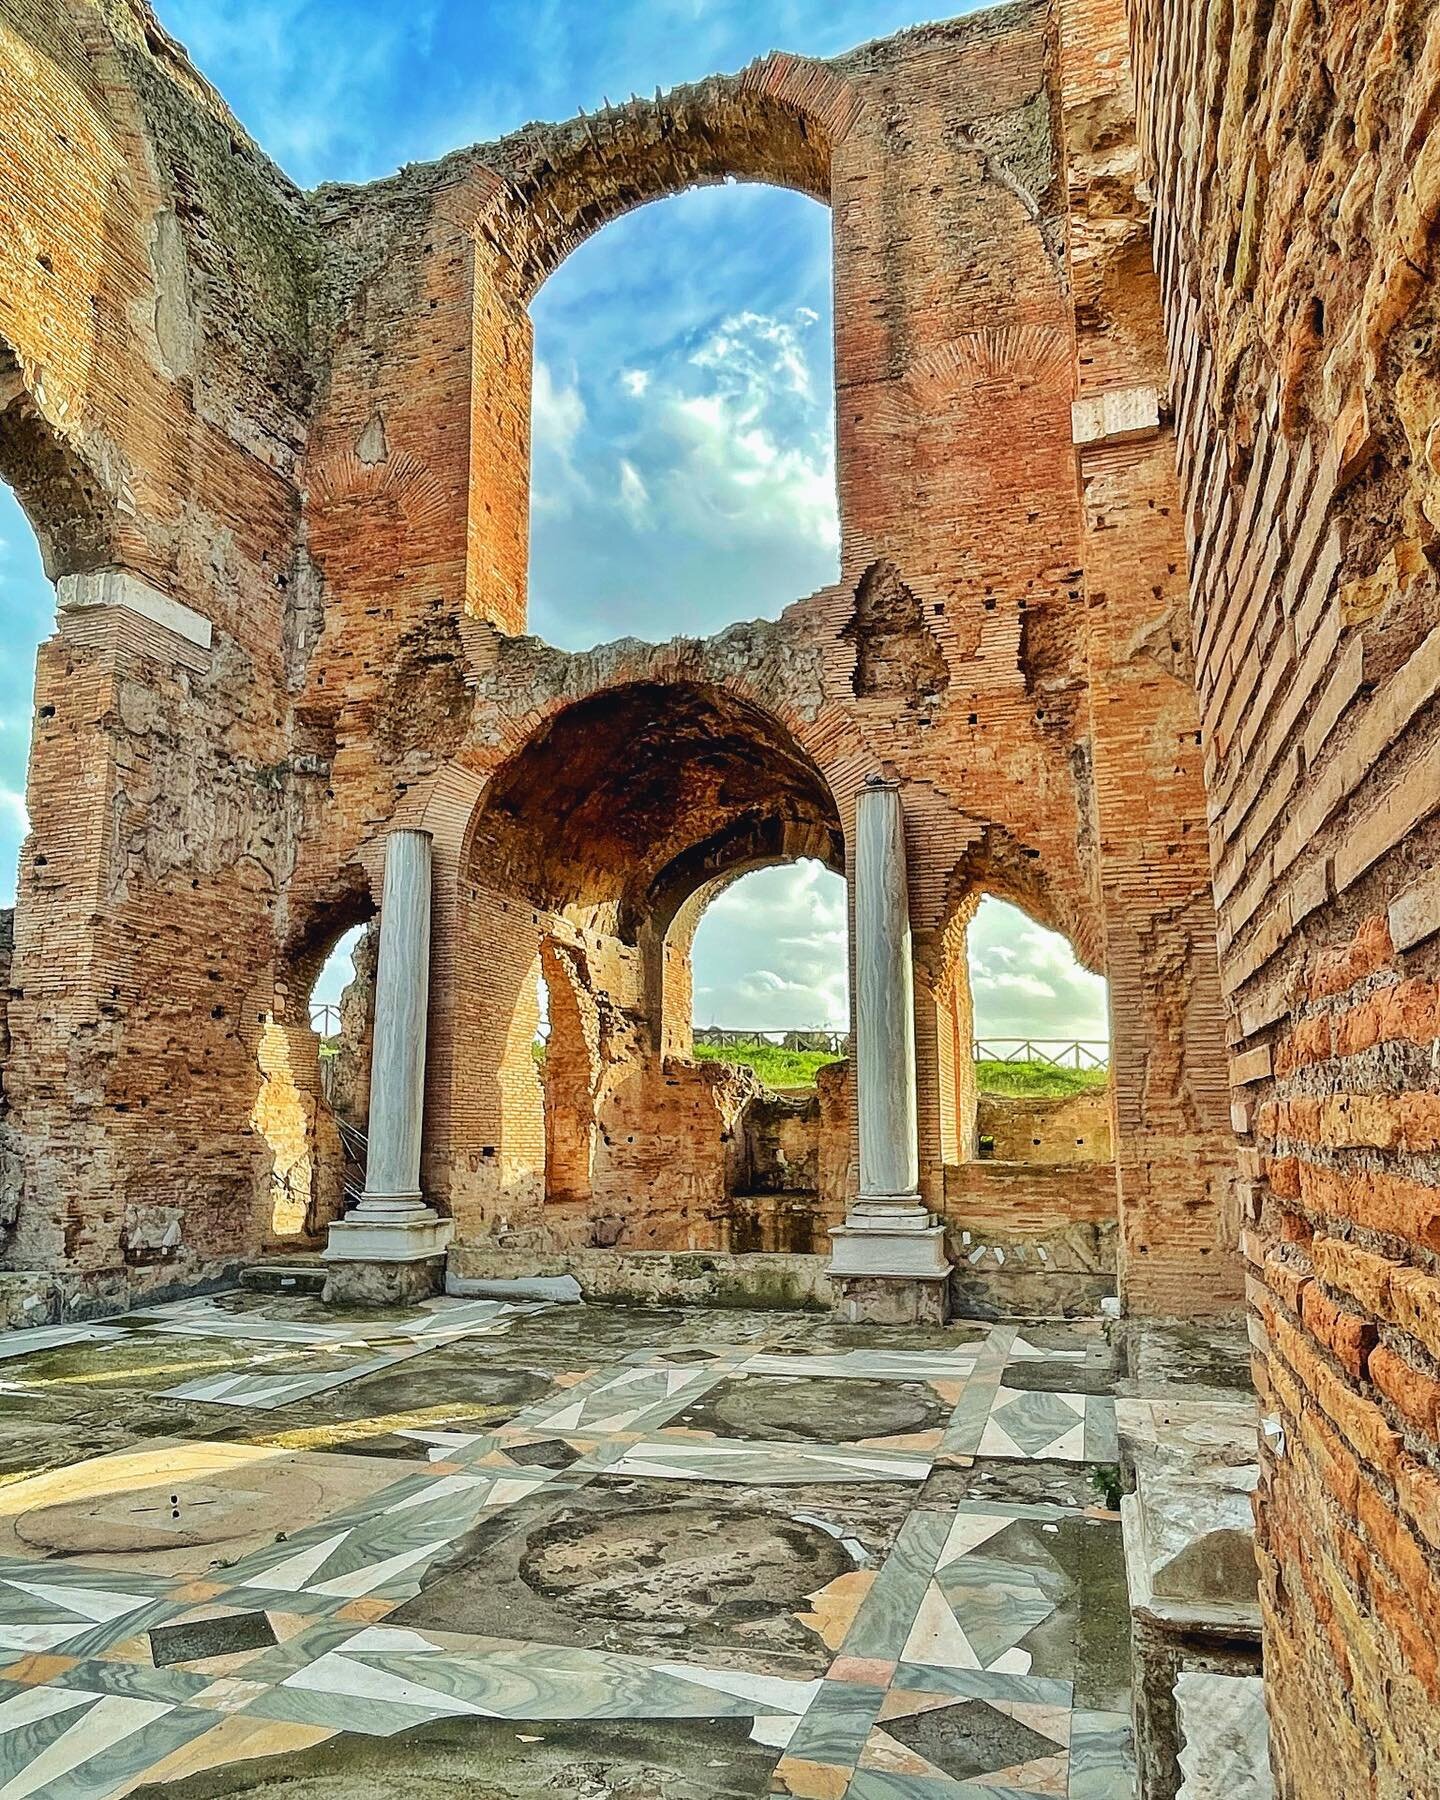 La Villa dei Quintili sull&rsquo;Appia antica &egrave; una delle pi&ugrave; importanti e grandi ville della Roma imperiale.

Era una residenza grandissima, con appartamenti, terme, teatro, ippodromo, fontane&hellip; visitata e camminare attraverso i 